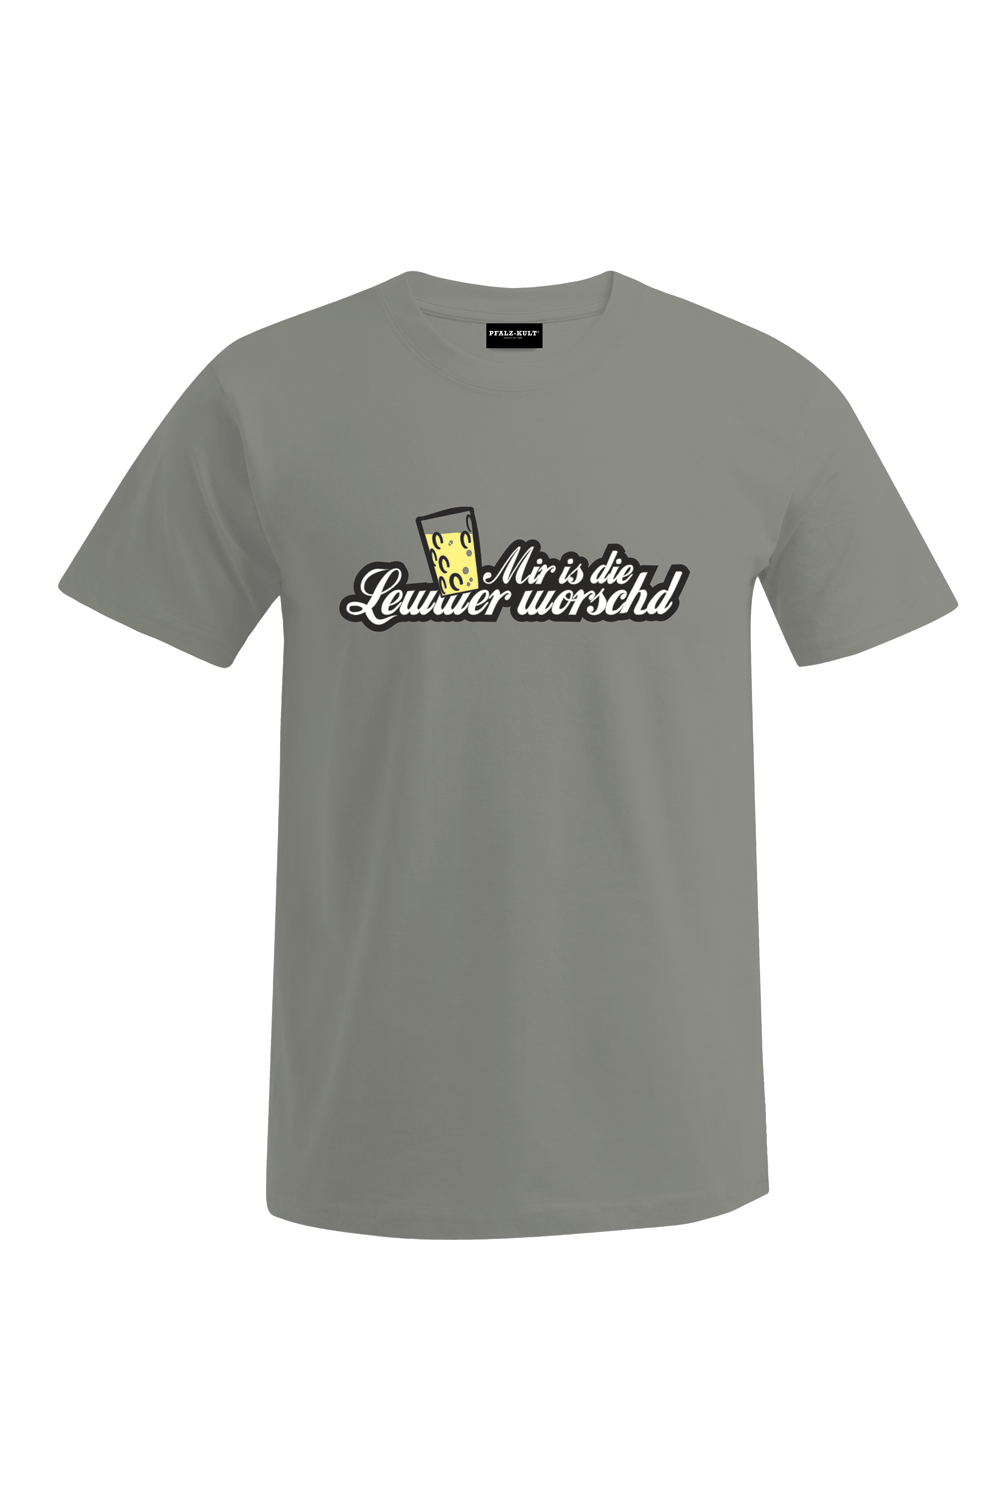 Lewwer worschd - Männer T-Shirt - Unisex